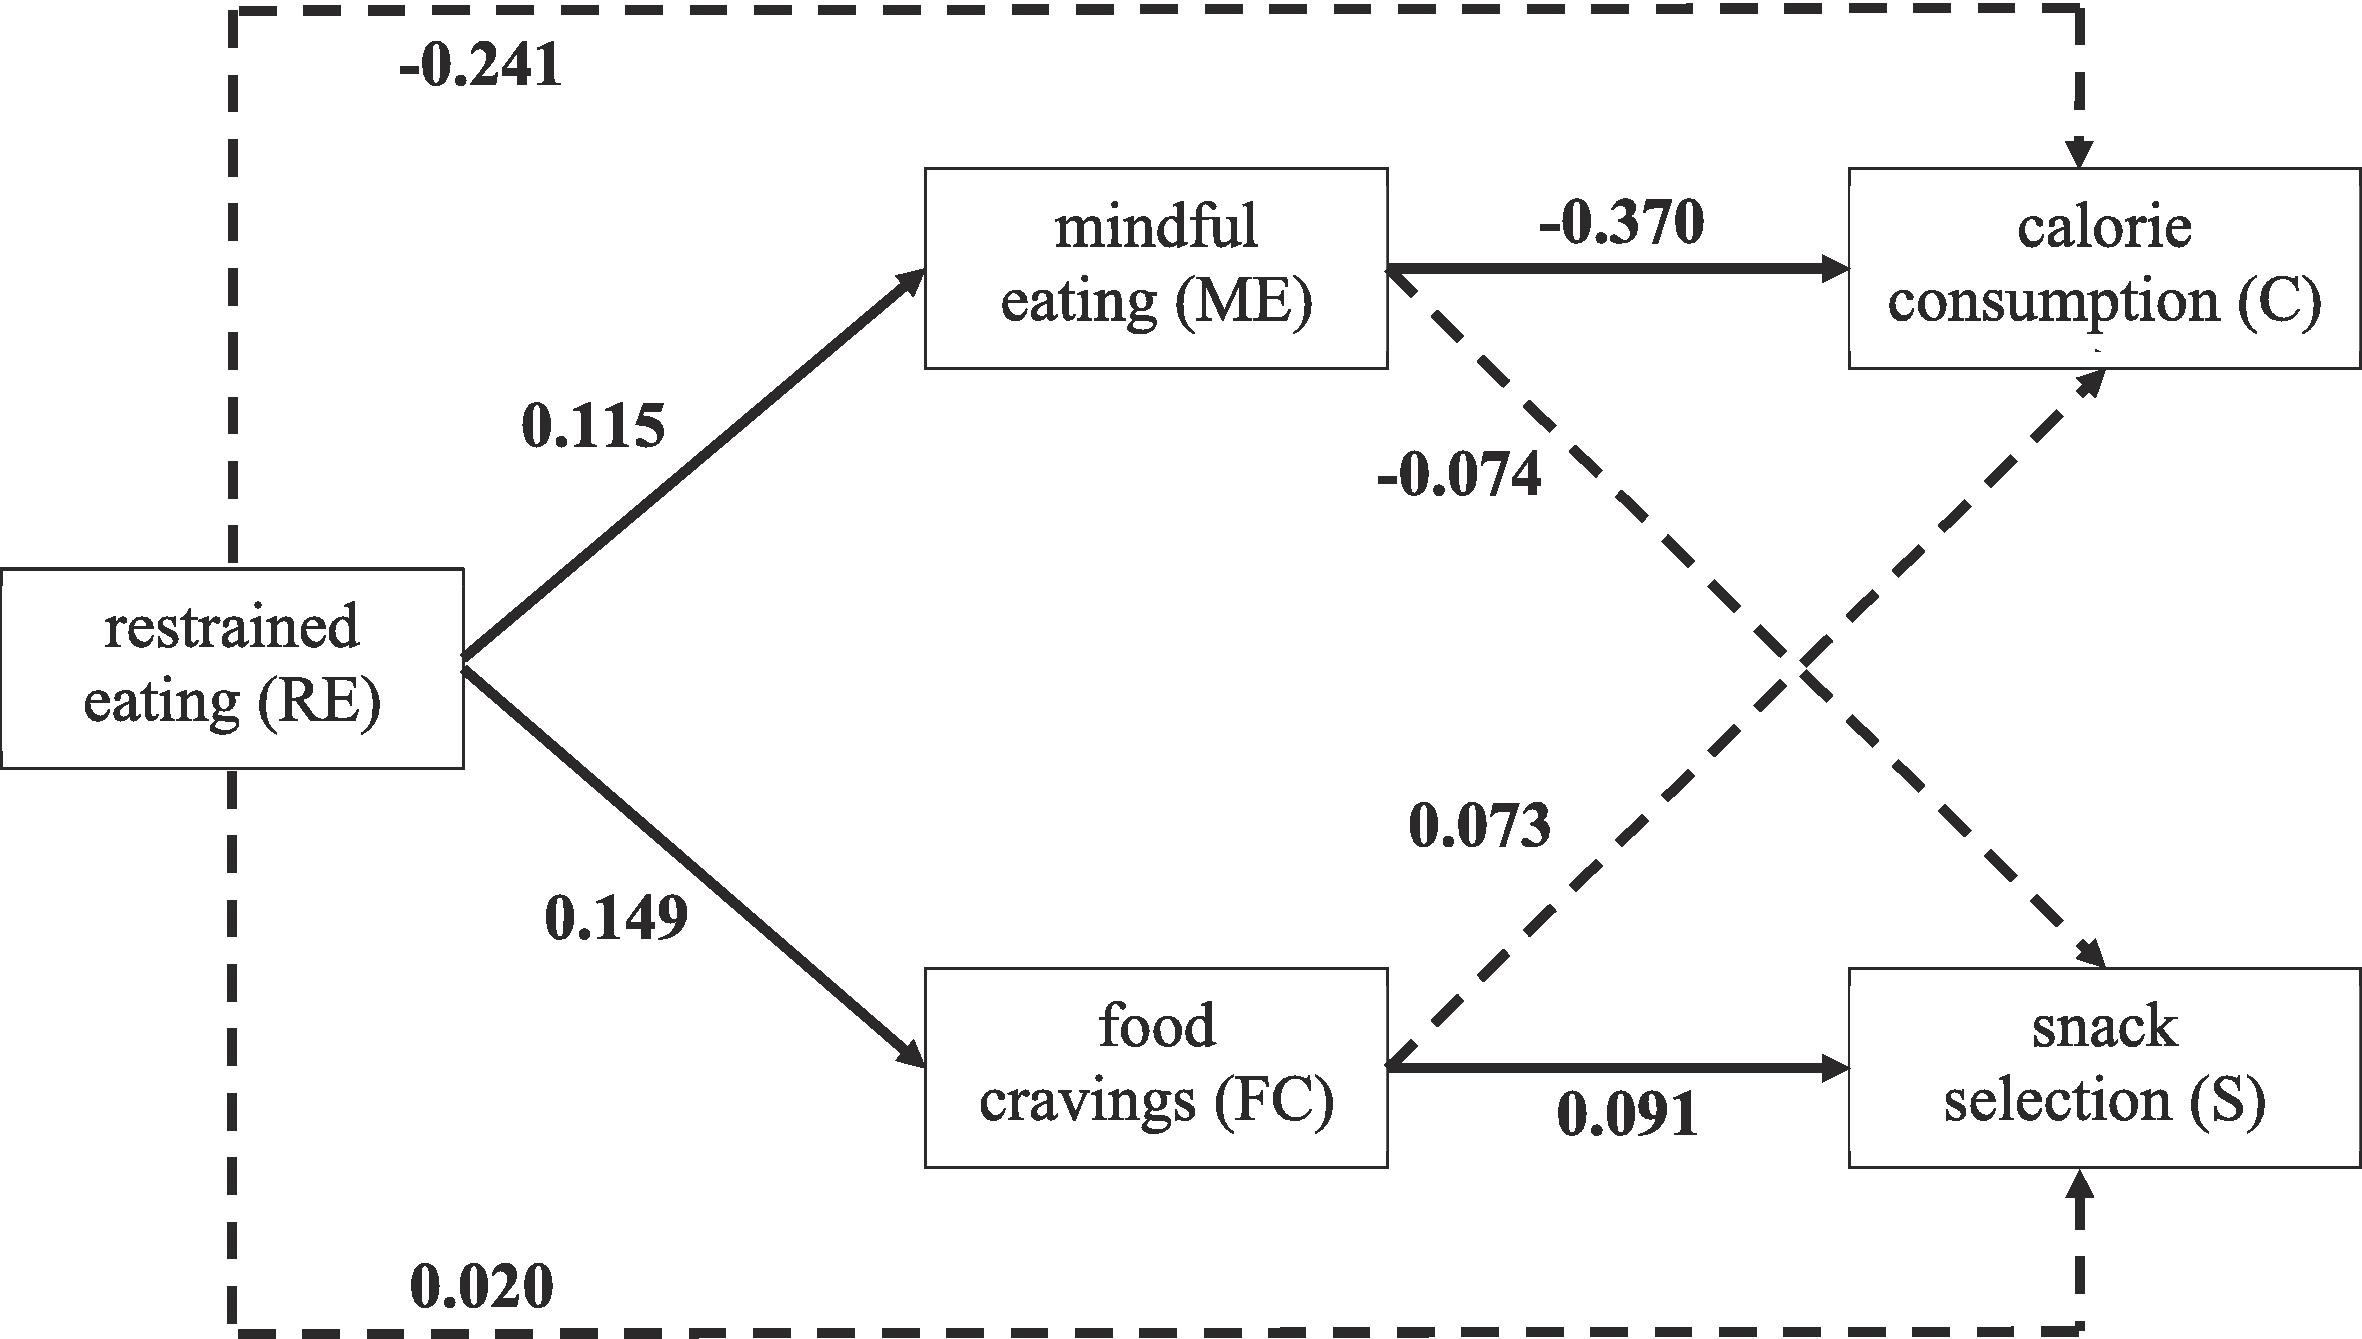 Modèle prédictif de l’effet de la restriction alimentaire sur la sélection calorique | Cultures Sucre